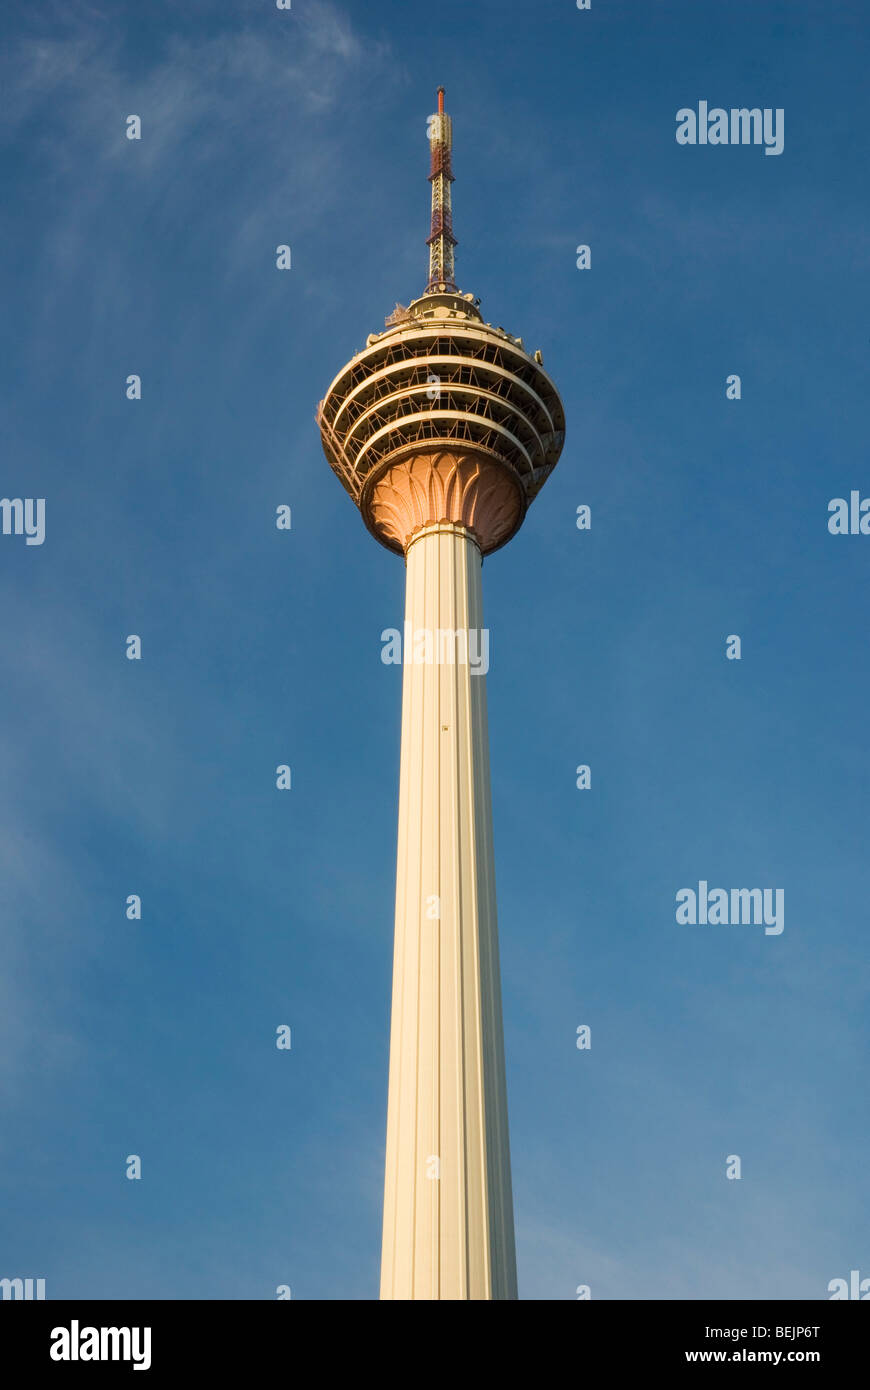 Einer der prominenten Sehenswürdigkeiten in Kuala Lumpur, Malaysia - KL Tower. Stockfoto